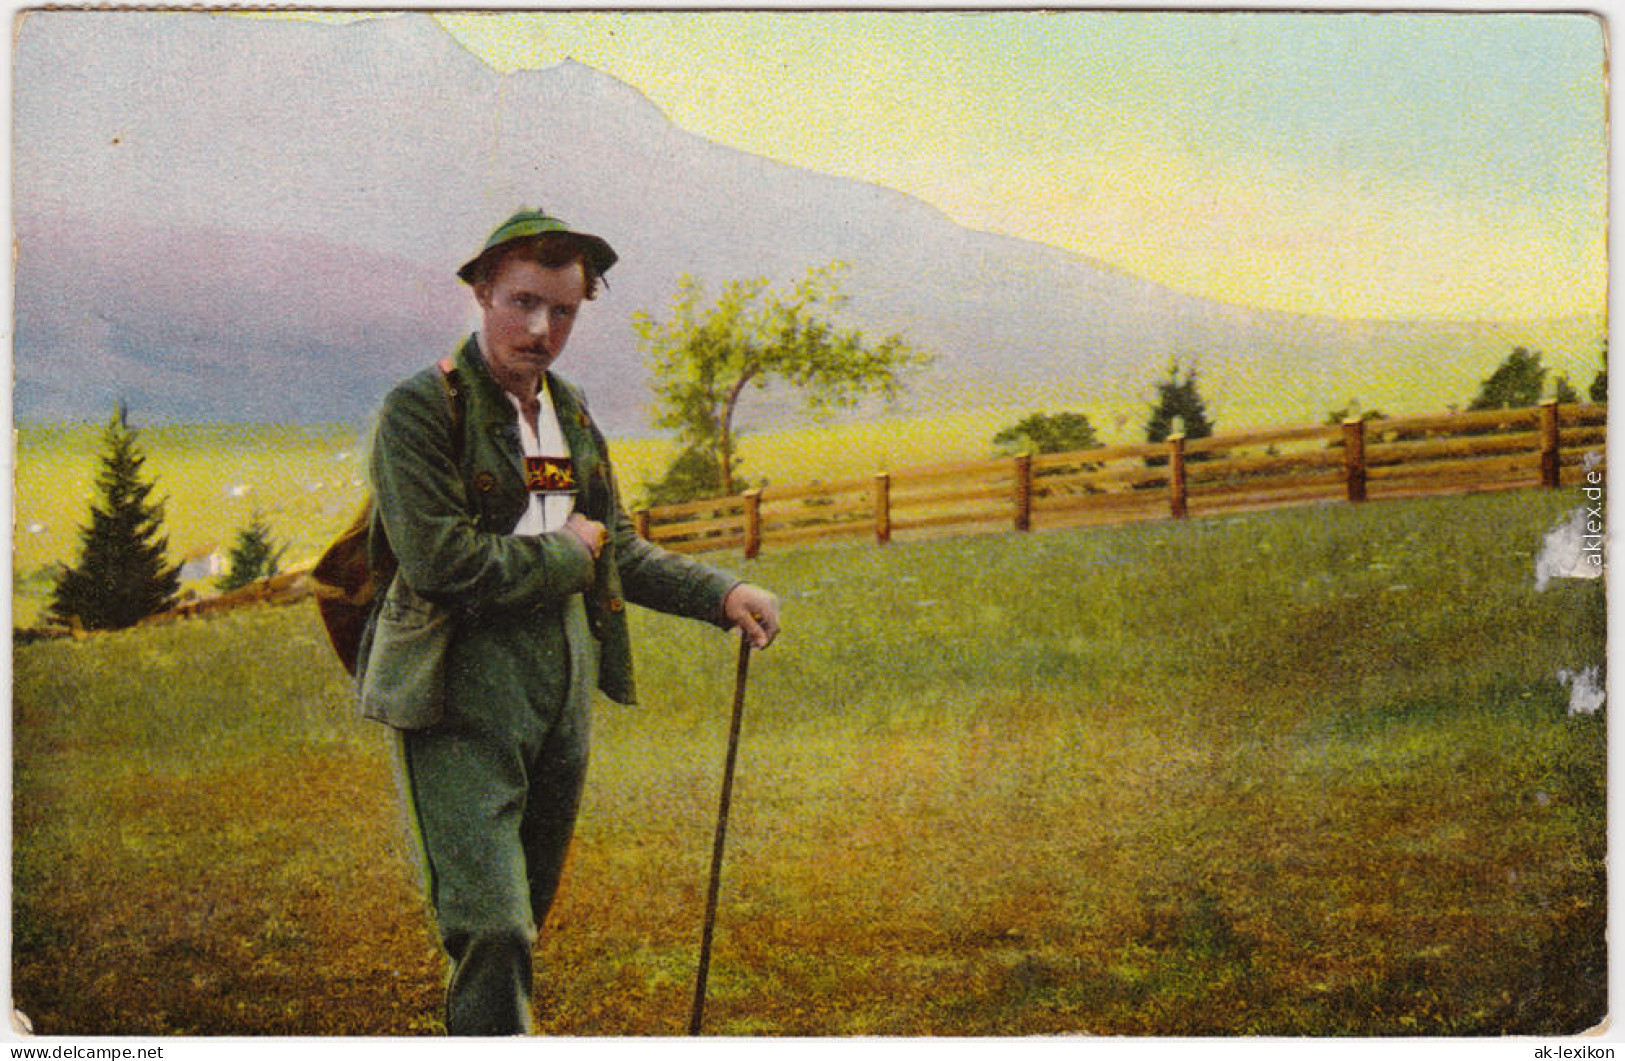  Wanderer In Tracht - Alm - Liederkarte Von Einem Bergli Muss I Scheiden 1913  - Muziek